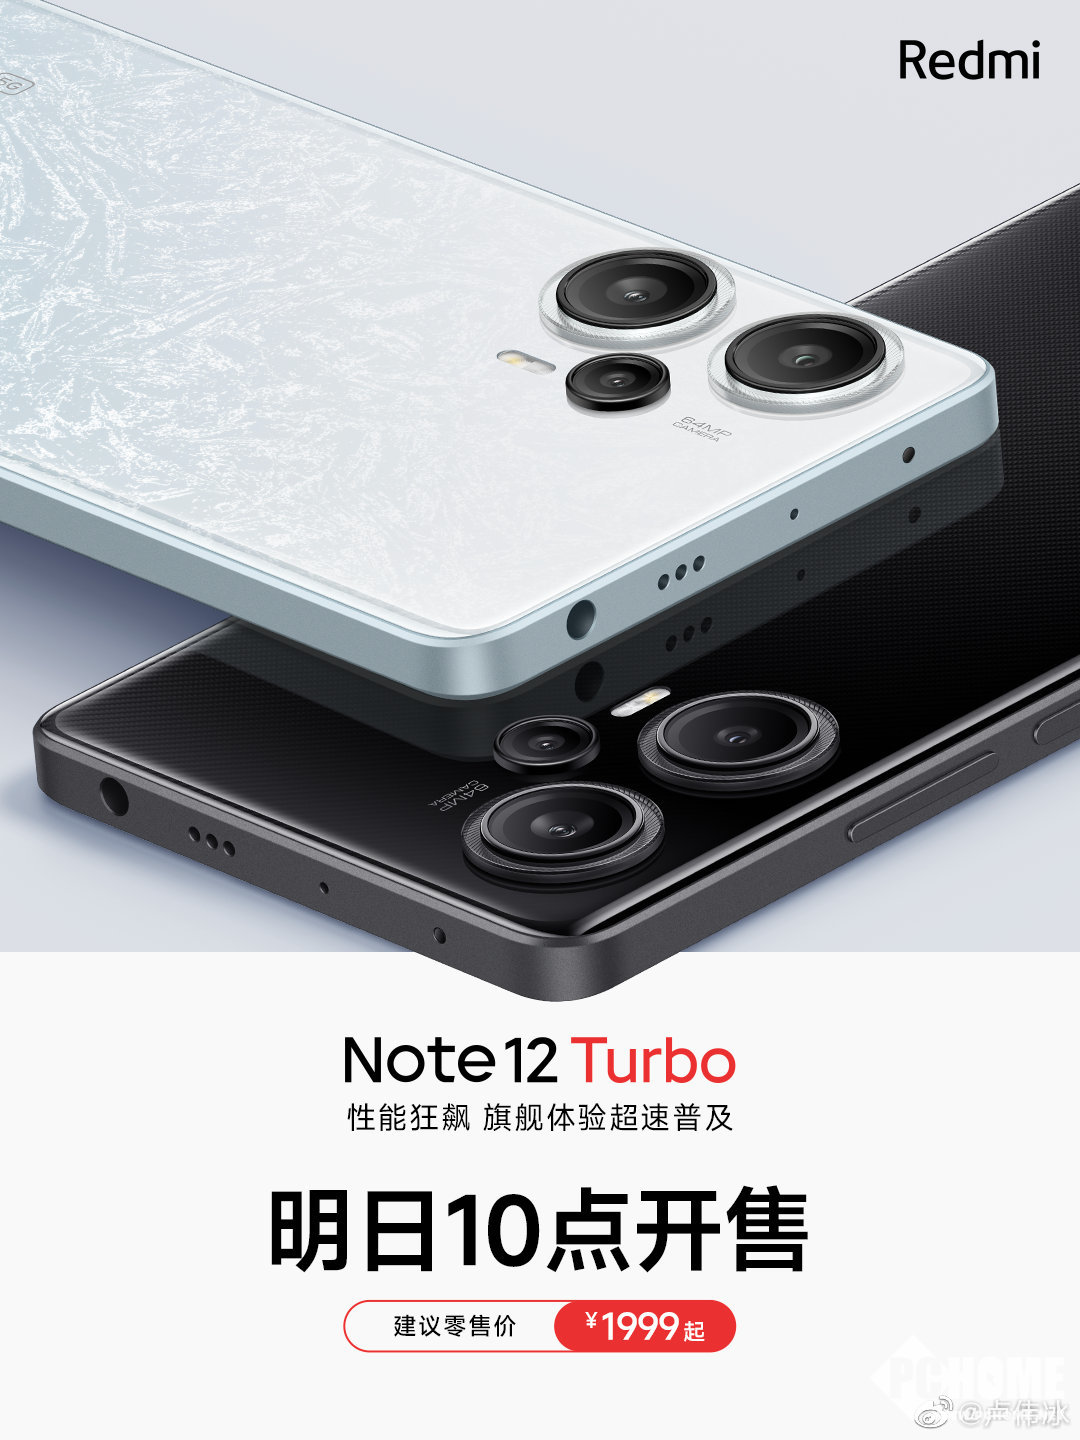 性价比之王Redmi Note 12 Turbo明天10点开售-PChome